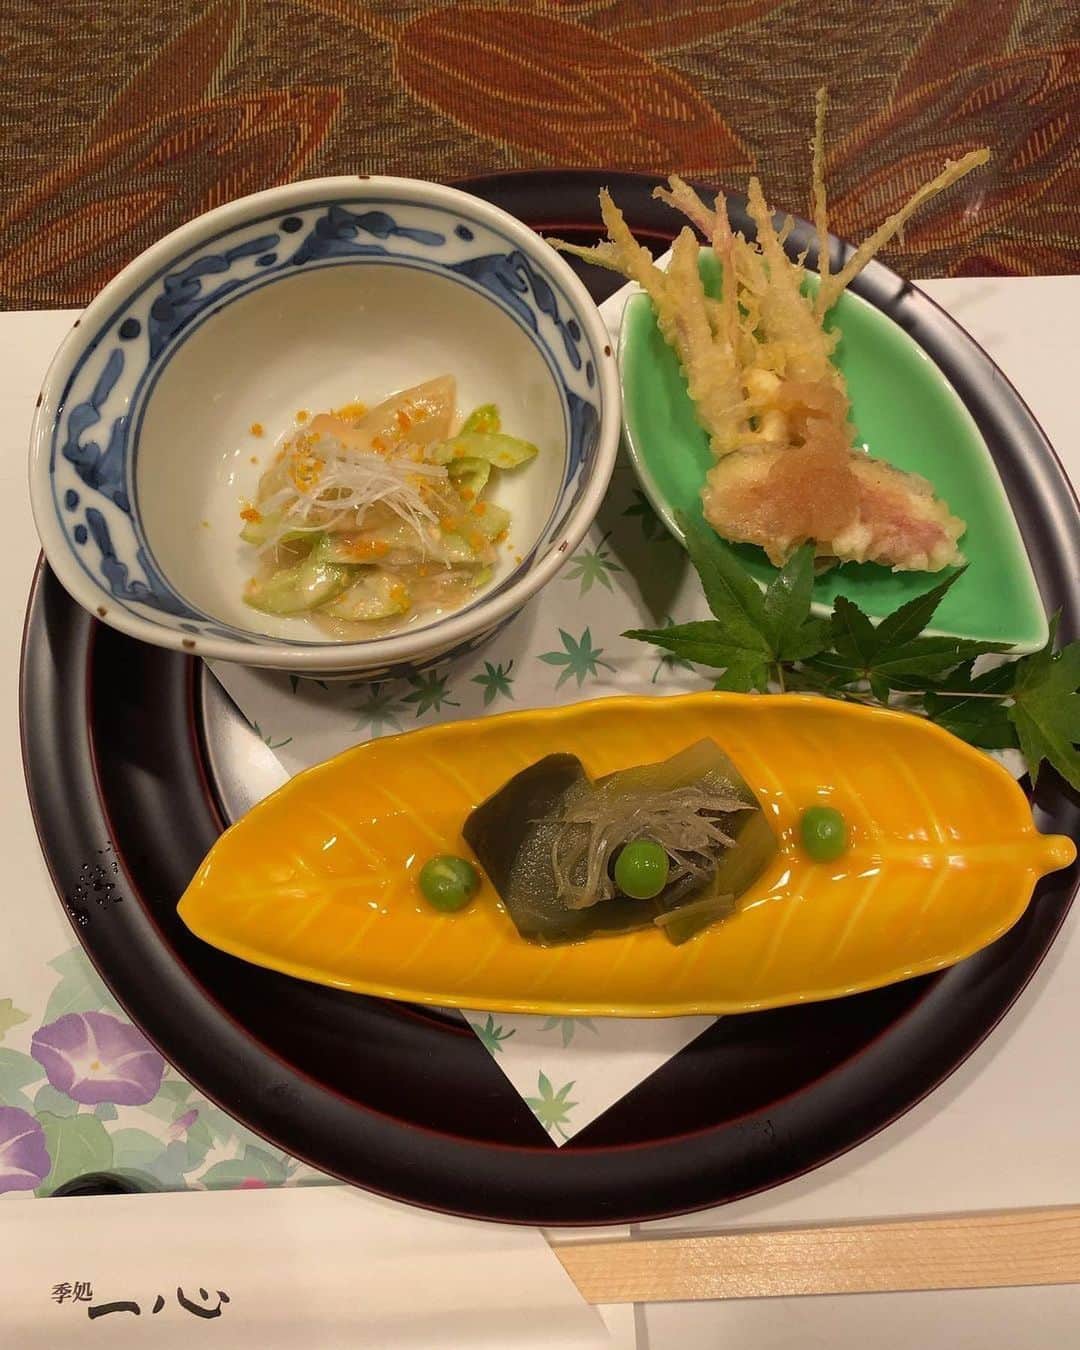 newotani_osakaのインスタグラム：「【 旬の日本料理で秋を感じる 】～おすすめ「松茸会席」は9/30まで🍄～  食欲の秋！美味しい食材がたくさん出回る、嬉しいシーズンとなりました。 皆さま、この秋に食べたいものは何ですか？  旬のフルーツ🍇やスイーツ🌰もいいですが、 本格的な日本料理で、”秋”を感じてみるのもいいですね🍁  本日は、春夏秋冬、芳醇な旬のよろこびを皆さまのお席にお届けする【季処 一心】をご紹介します。 ご利用いただいたお客様の美味しそうな写真・動画とともにご覧ください。  ＝＝＝ 📷 @hideto_motooka さま  季処　一心⭐︎  ニューオータニ大阪にある割烹 みなづきコース🐟✨ 全て美味しかったのですが、 個人的にはグラタンが😋w  テーブル個室の雰囲気も良く ゆっくりと食事ができました◎ また行きたいお店ですな😊 ご馳走様でした✨  💬ご利用ありがとうございます。 コース料理をごゆっくりとお愉しみいただけたようで 私たちも嬉しい限りです。 またのお越しをお待ちしております。 ＝＝＝  細やかな日本情緒を込めた四季折々の旬の味わいや日本各地から吟味して集めた銘酒を、料理人自慢の包丁さばきとともにお愉しみいただけます🔪  ＼季節のおすすめ🍄／  【松茸会席】（9/30まで）  🍚メニュー 釜炊きご飯をはじめ、土瓶蒸しやかき揚げなど、松茸尽くしの会席。 秋に二度目の旬を迎える鱧や和牛など、厳選した食材でご用意いたします。  盛りだくさんのメニューの一部をご紹介します。  ・先付け（焼き松茸と菊菜のお浸し、生雲丹と湯葉の鼈甲餡掛けなど） ・温物（松茸土瓶蒸し、鯛、車海老など） ・刺身（本日のお造り盛り合わせなど） ・焼物（真名鰹西京焼き、松茸の搔き揚げなど） ・煮物（鱧と松茸の柳川など） ・進肴（黒毛和牛リブロースと松茸のすき焼き温玉添えなど） ・御飯（松茸の釜炊きご飯） ・留椀（本日の味噌汁） ・水菓子（季節の果物クープ仕立てとミルクジェラート）  ⏲時間：ディナー　17：00～21：00（LO 20：30） ※月曜定休  👛料金：1名さま ￥24,000　サービス料別  📅ご予約：3日前までにご予約ください  ーー  9/18（月･祝）は「敬老の日」。 ご家族との集まりやお祝い事などにもおすすめです。 旬の日本料理をぜひご堪能ください🥢  🔍詳しい情報・ご予約は、 @newotani_osaka プロフィールリンク ホテル公式WEBサイトより、「レストラン&バー」⇒「季処 一心」へお進みください。  #ホテルニューオータニ大阪 #ニューオータニ大阪 #大阪城公園 #大阪城 #大阪市中央区 #大阪ホテル #hotelnewoaniosaka #osakacastlepark #季処一心 #季処 #一心 #日本料理 #日本料理店 #大阪日本料理 #大阪和食 #和食大阪 #会席料理 #大阪会席料理 #割烹 #割烹料理 #大阪割烹 #顔合わせプラン #お食い初めプラン #個室日本料理 #本格日本料理 #本格和食 #大阪ホテルディナー #大阪ホテルランチ」